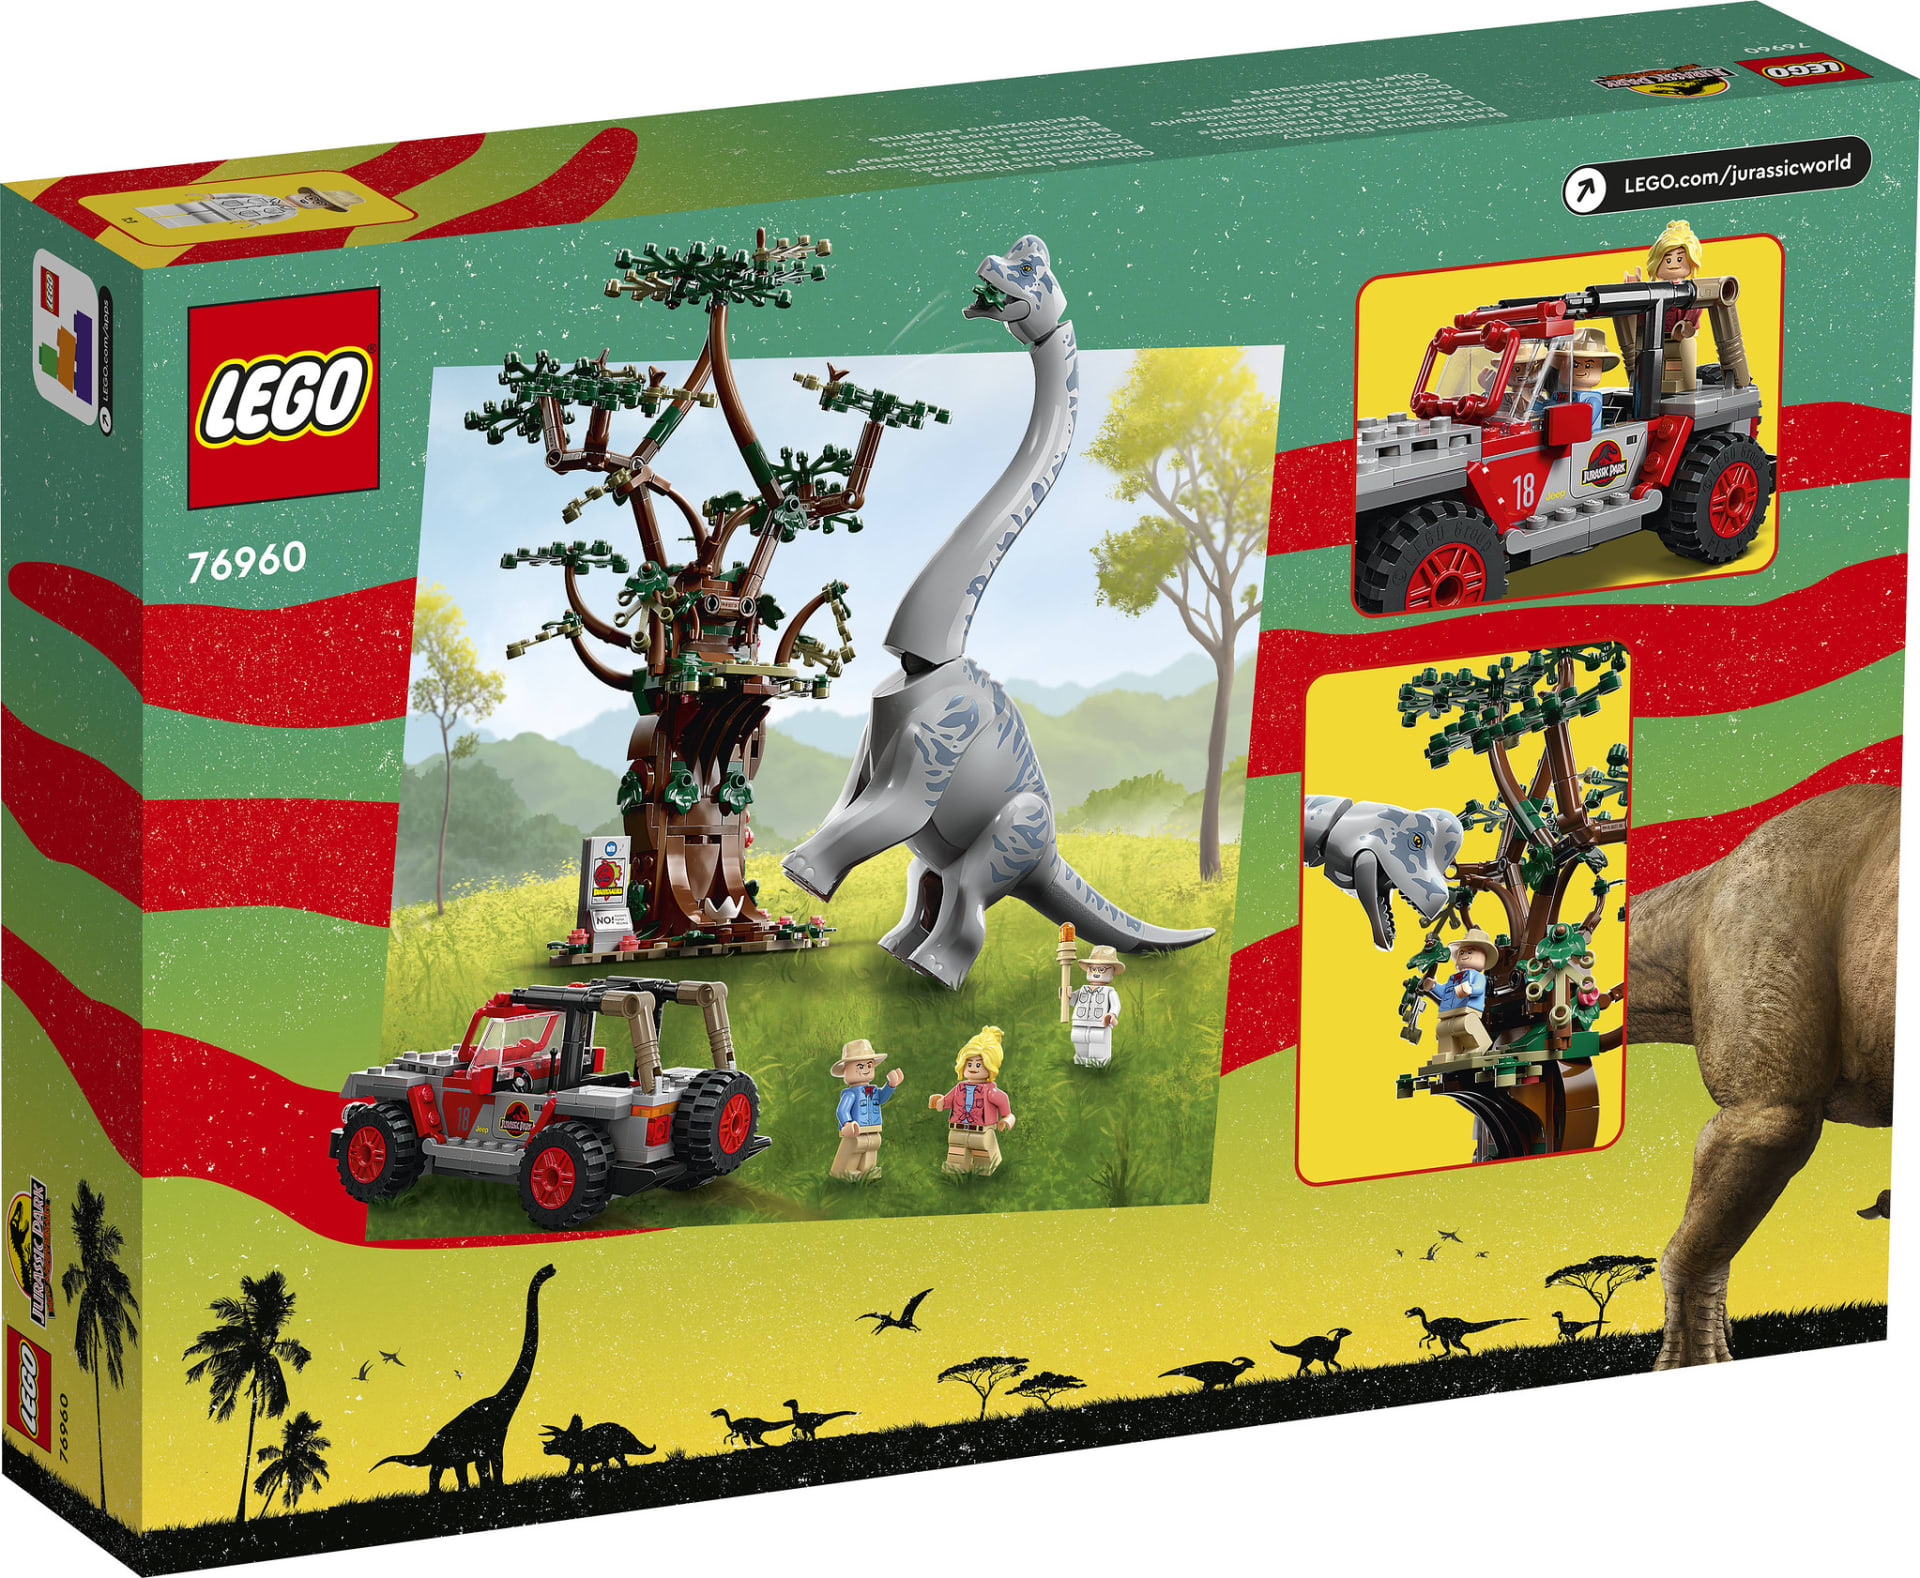 Lego podoba slavné scény z Jurského parku